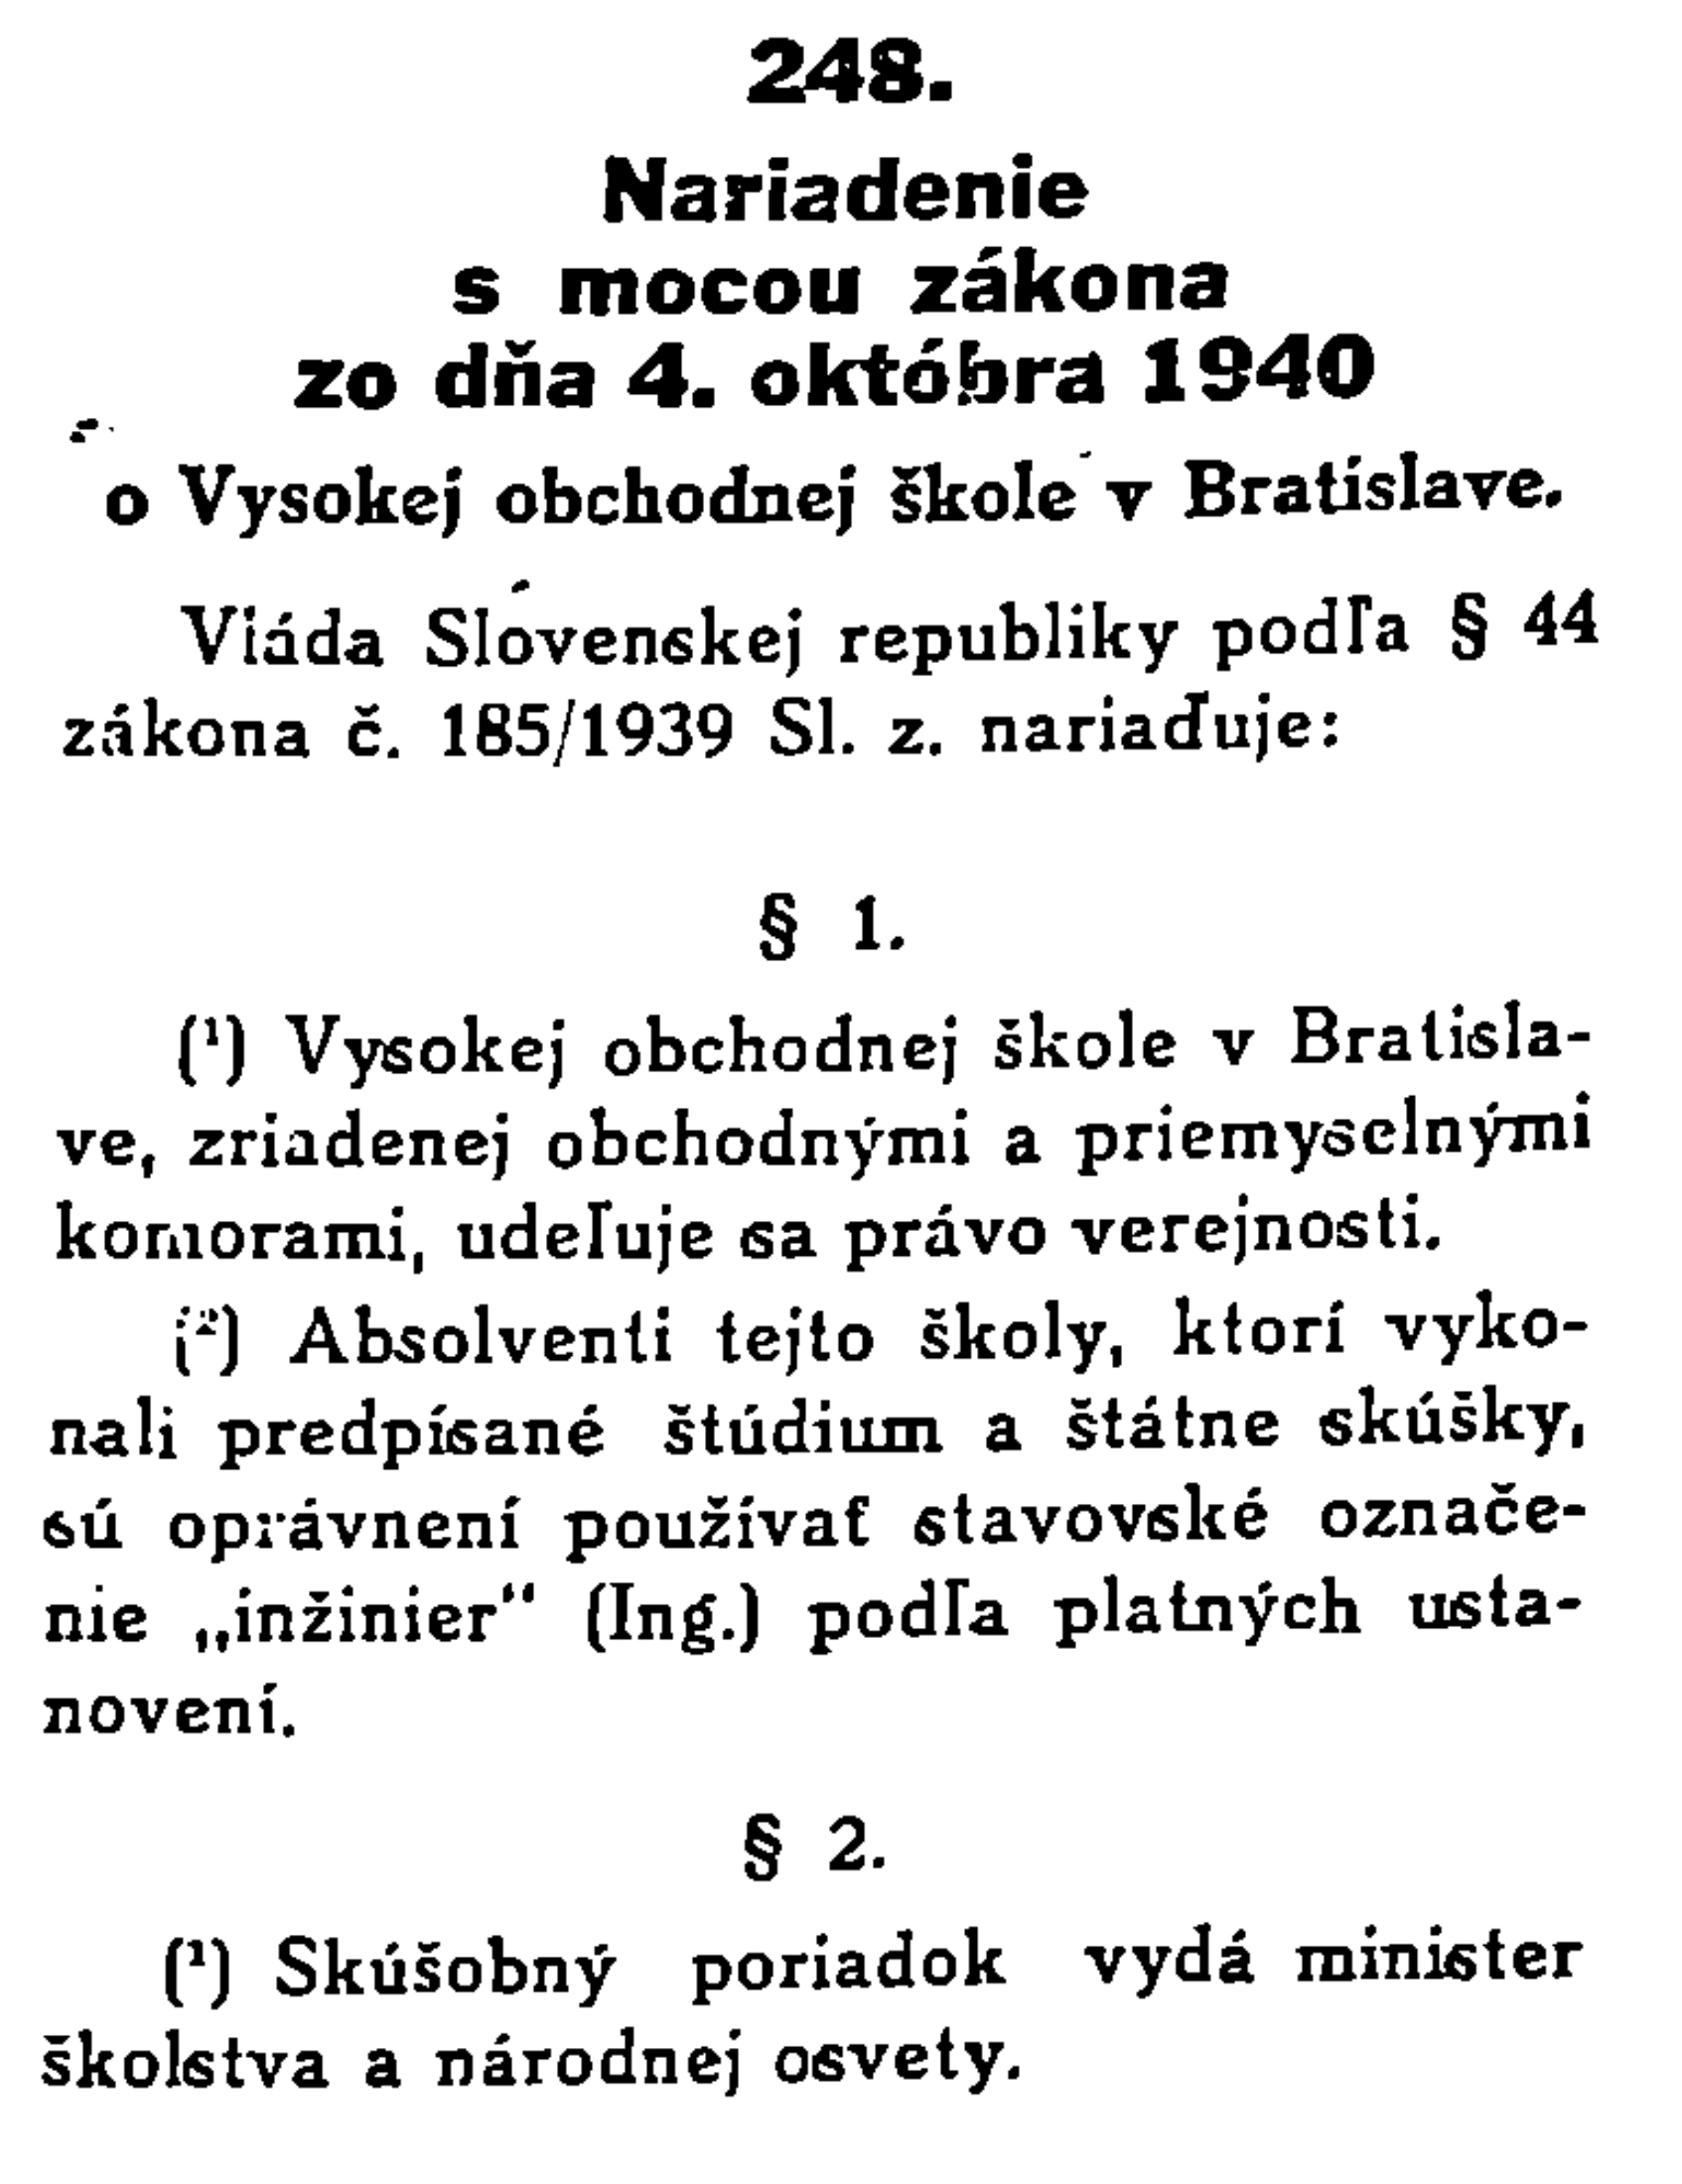 Nariadenie s mocou zákona č. 248/Slovenského zákonníka zo dňa 4. októbra 1940